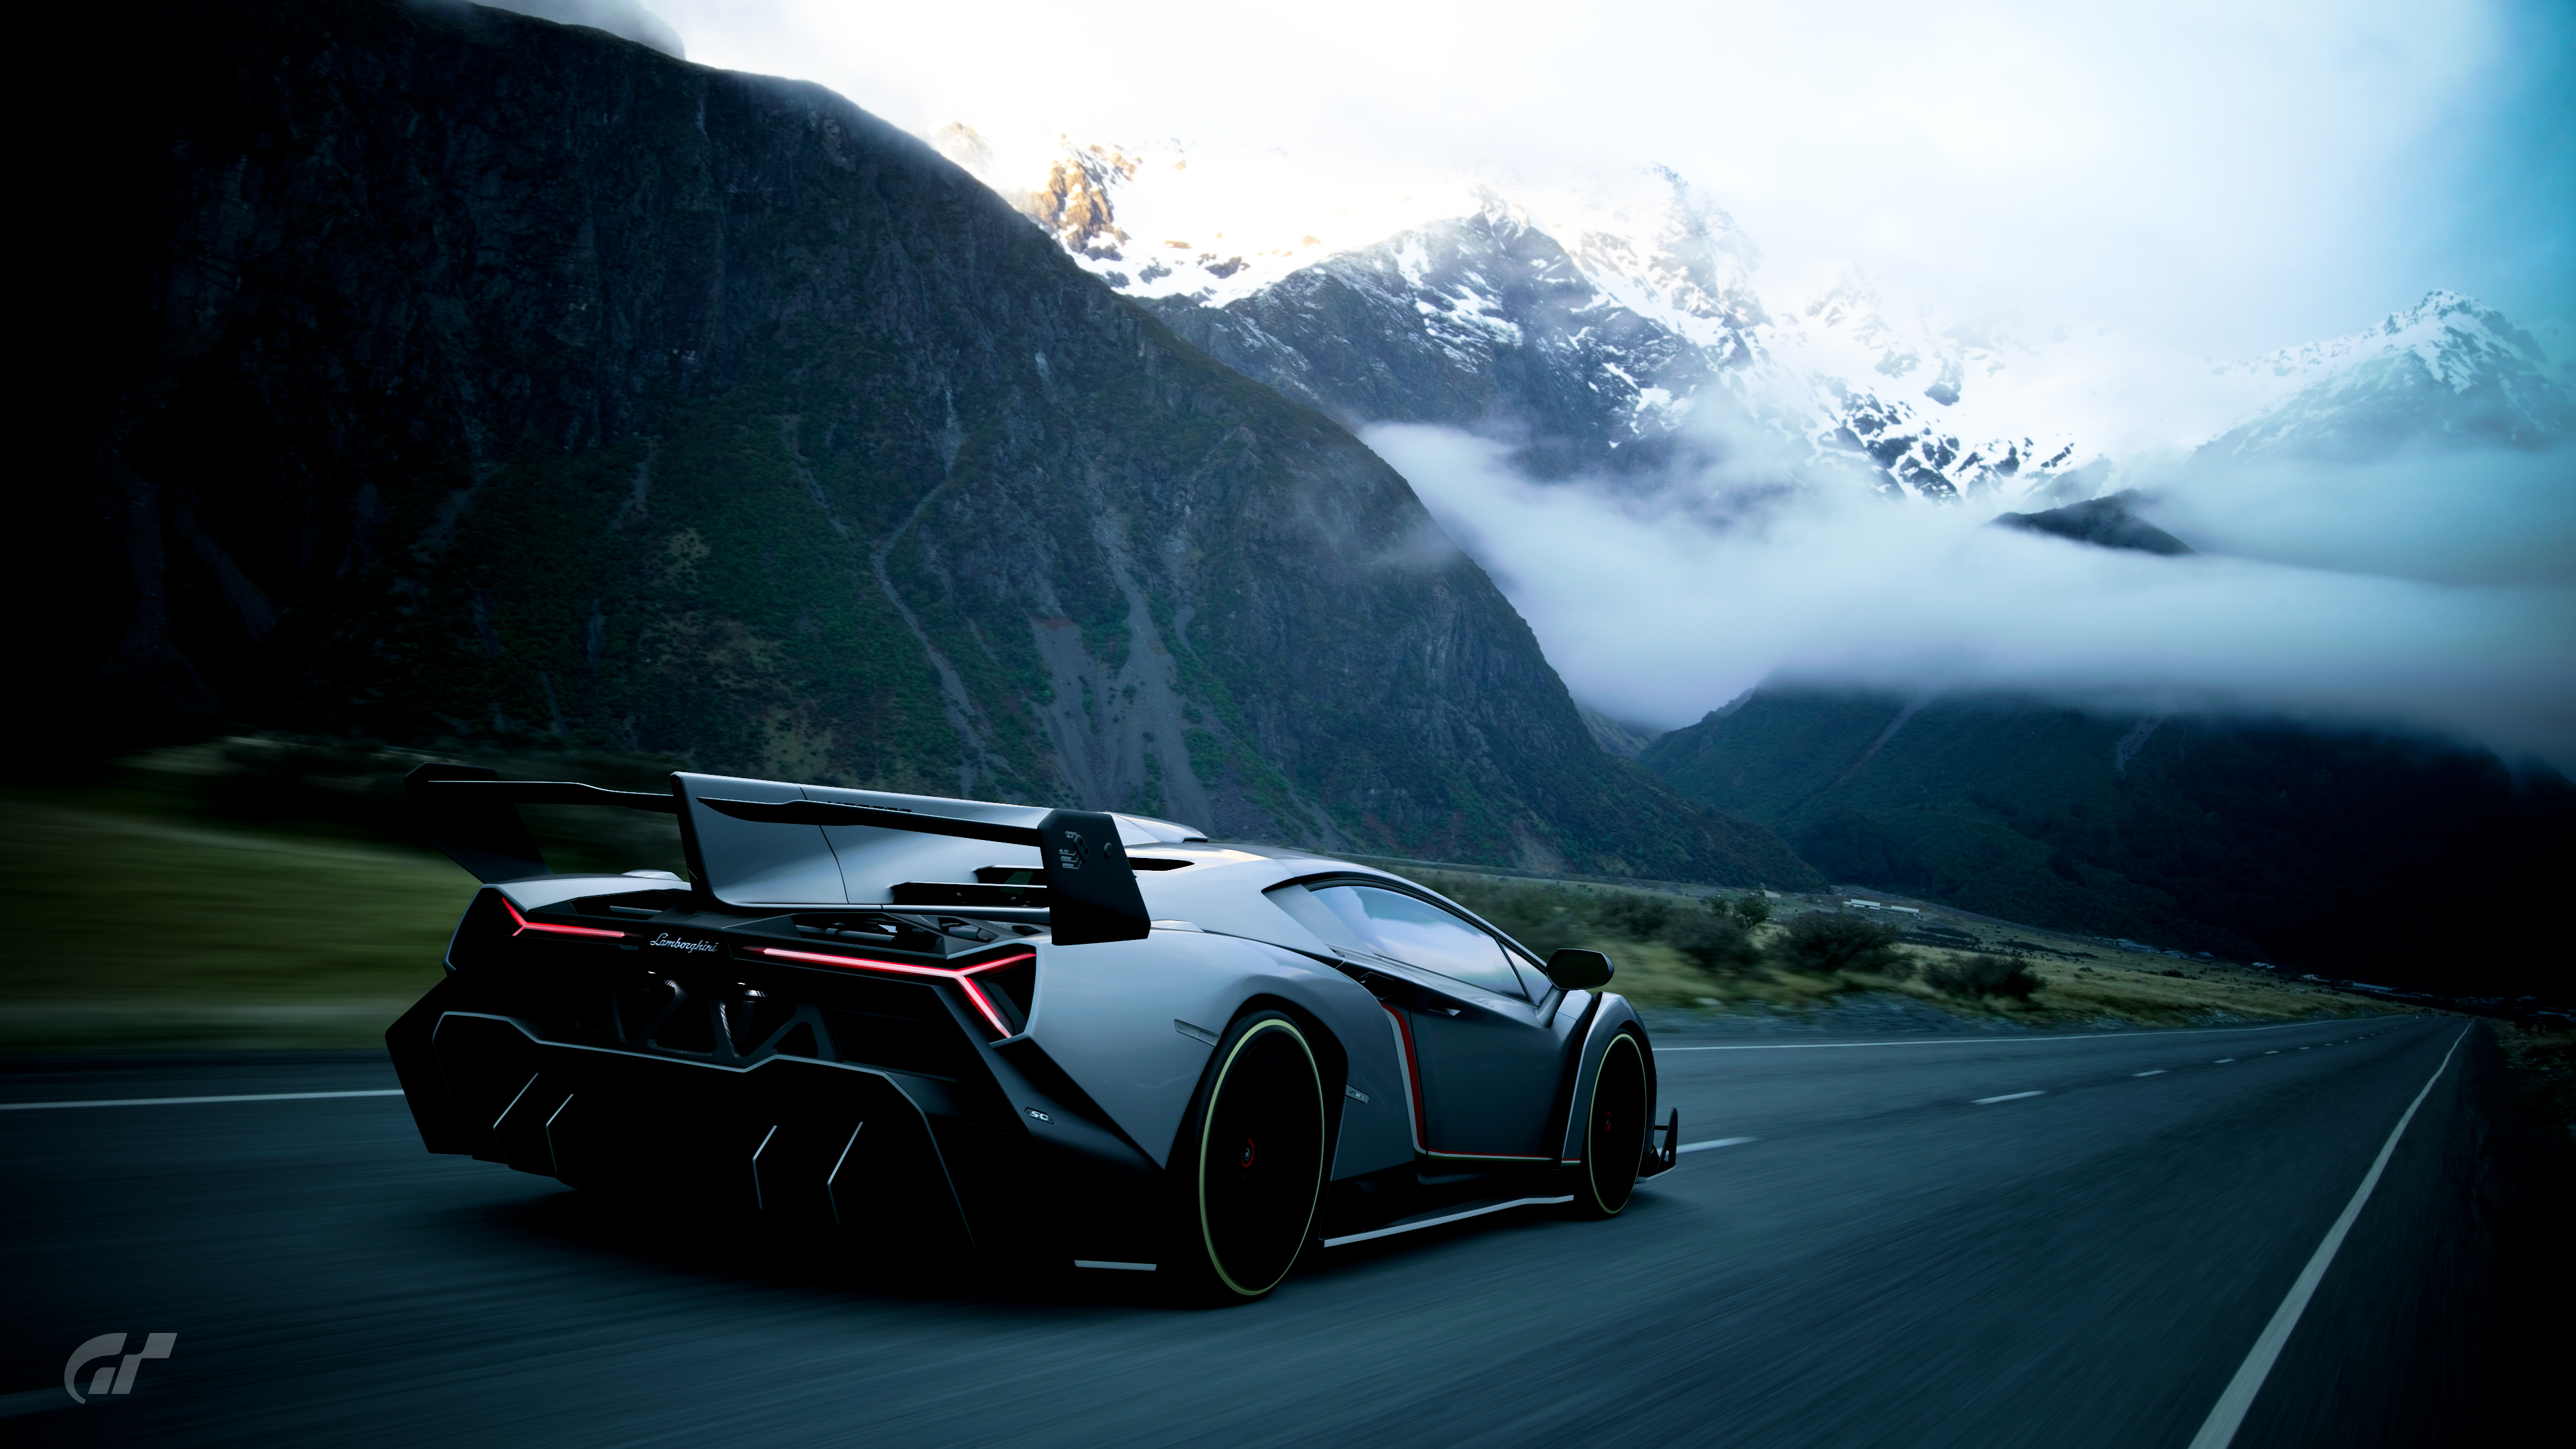 Lamborghini Veneno Gran Turismo Sport, HD Games, 4k Wallpapers, Images